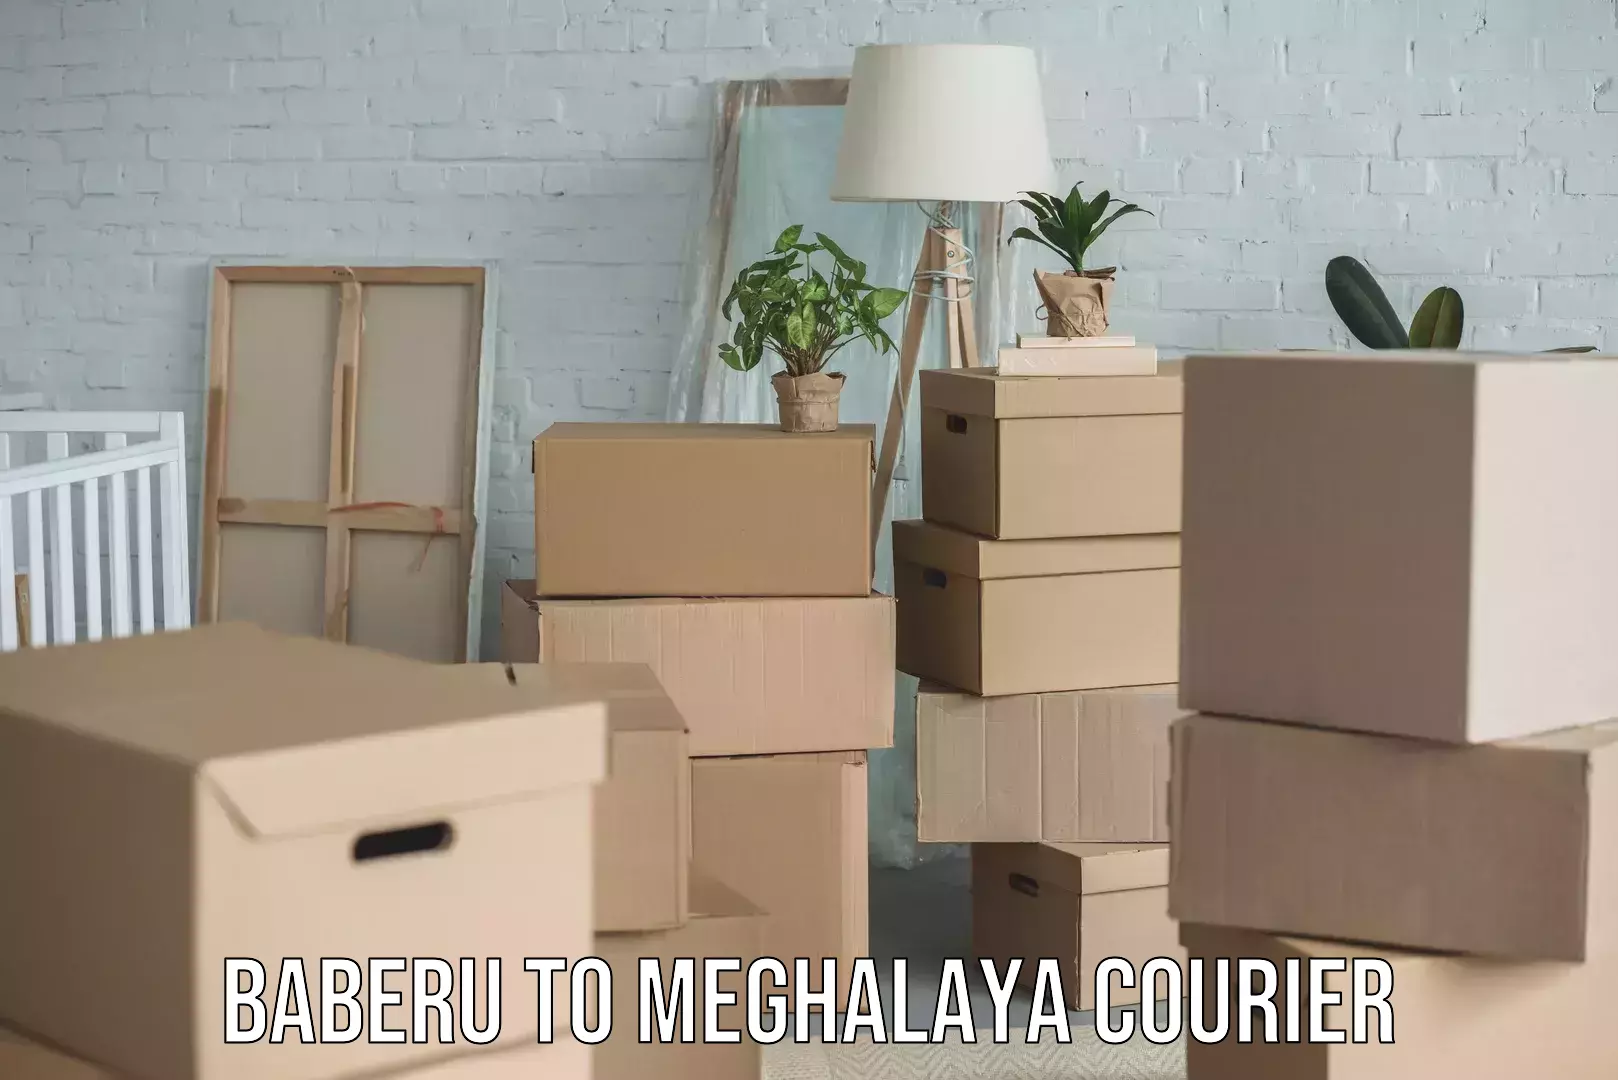 User-friendly courier app Baberu to Meghalaya